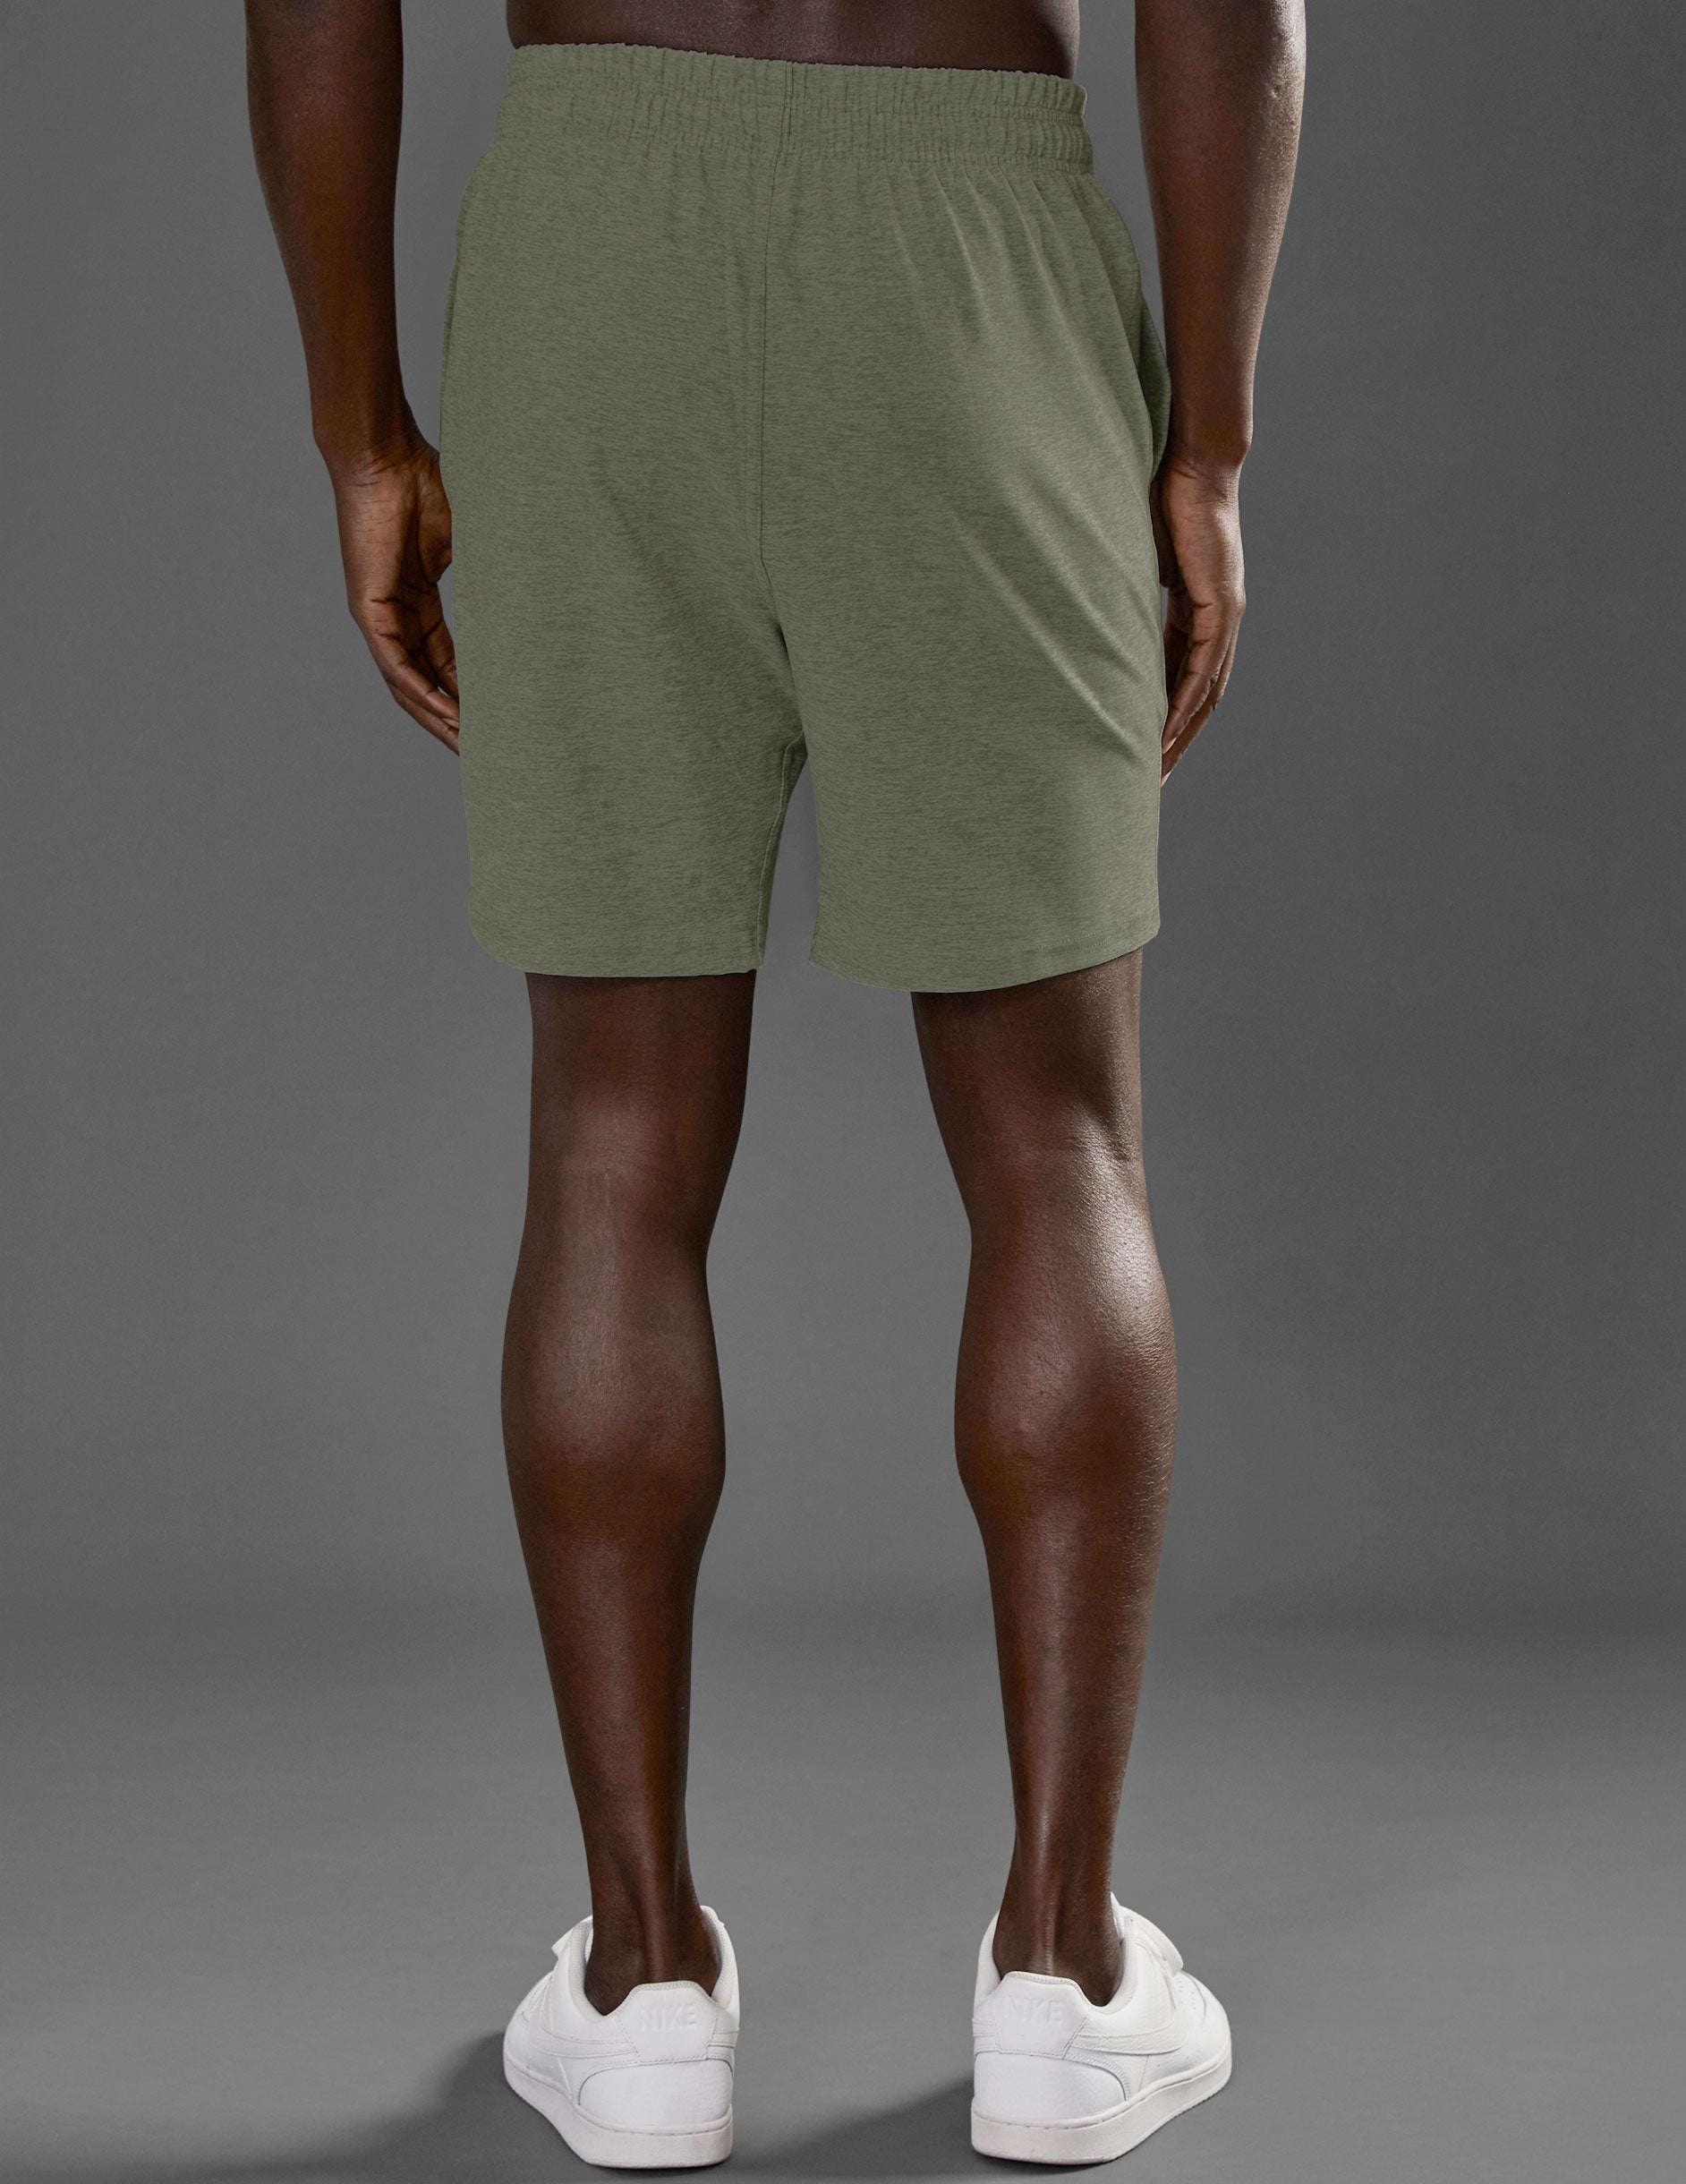 green mens shorts with pockets